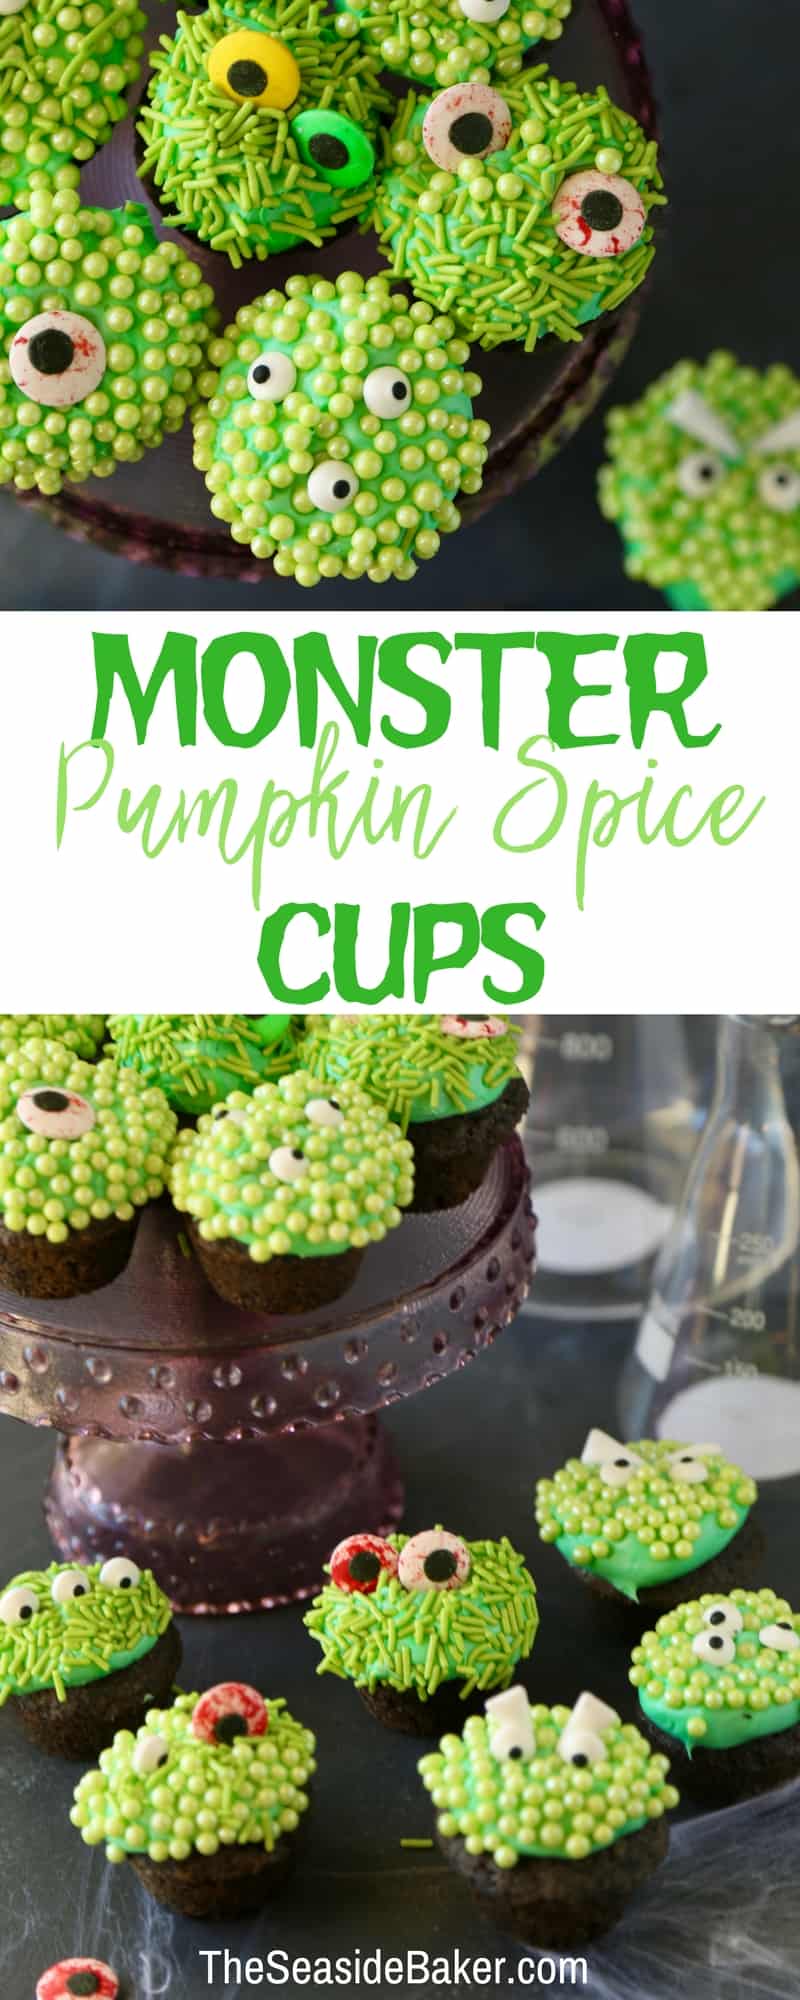 Pumpkin Spice Monster Cups